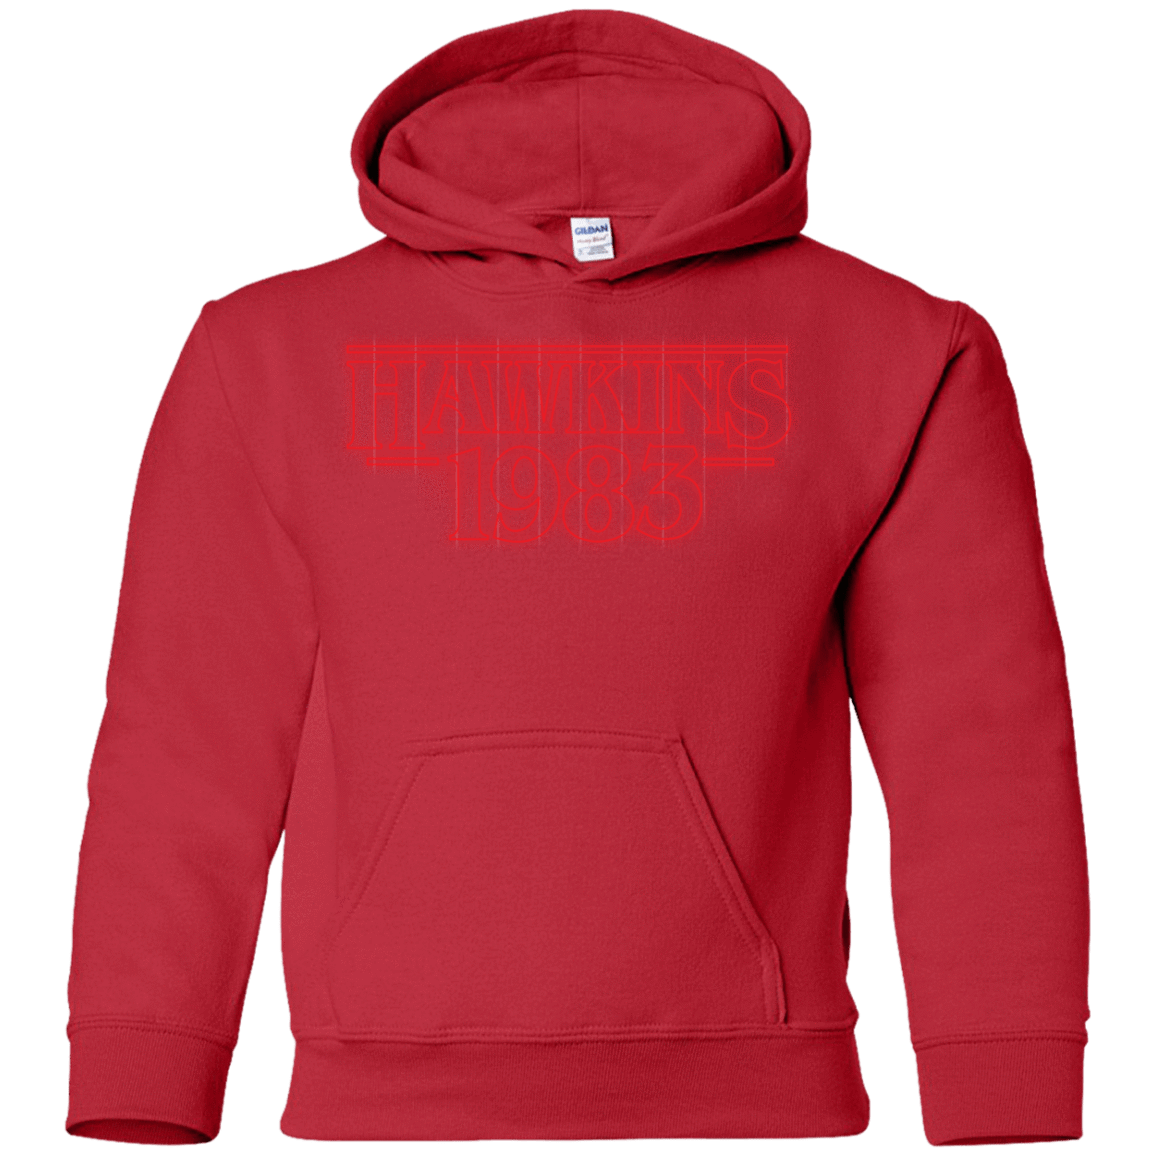 Sweatshirts Red / YS Hawkins 83 Youth Hoodie